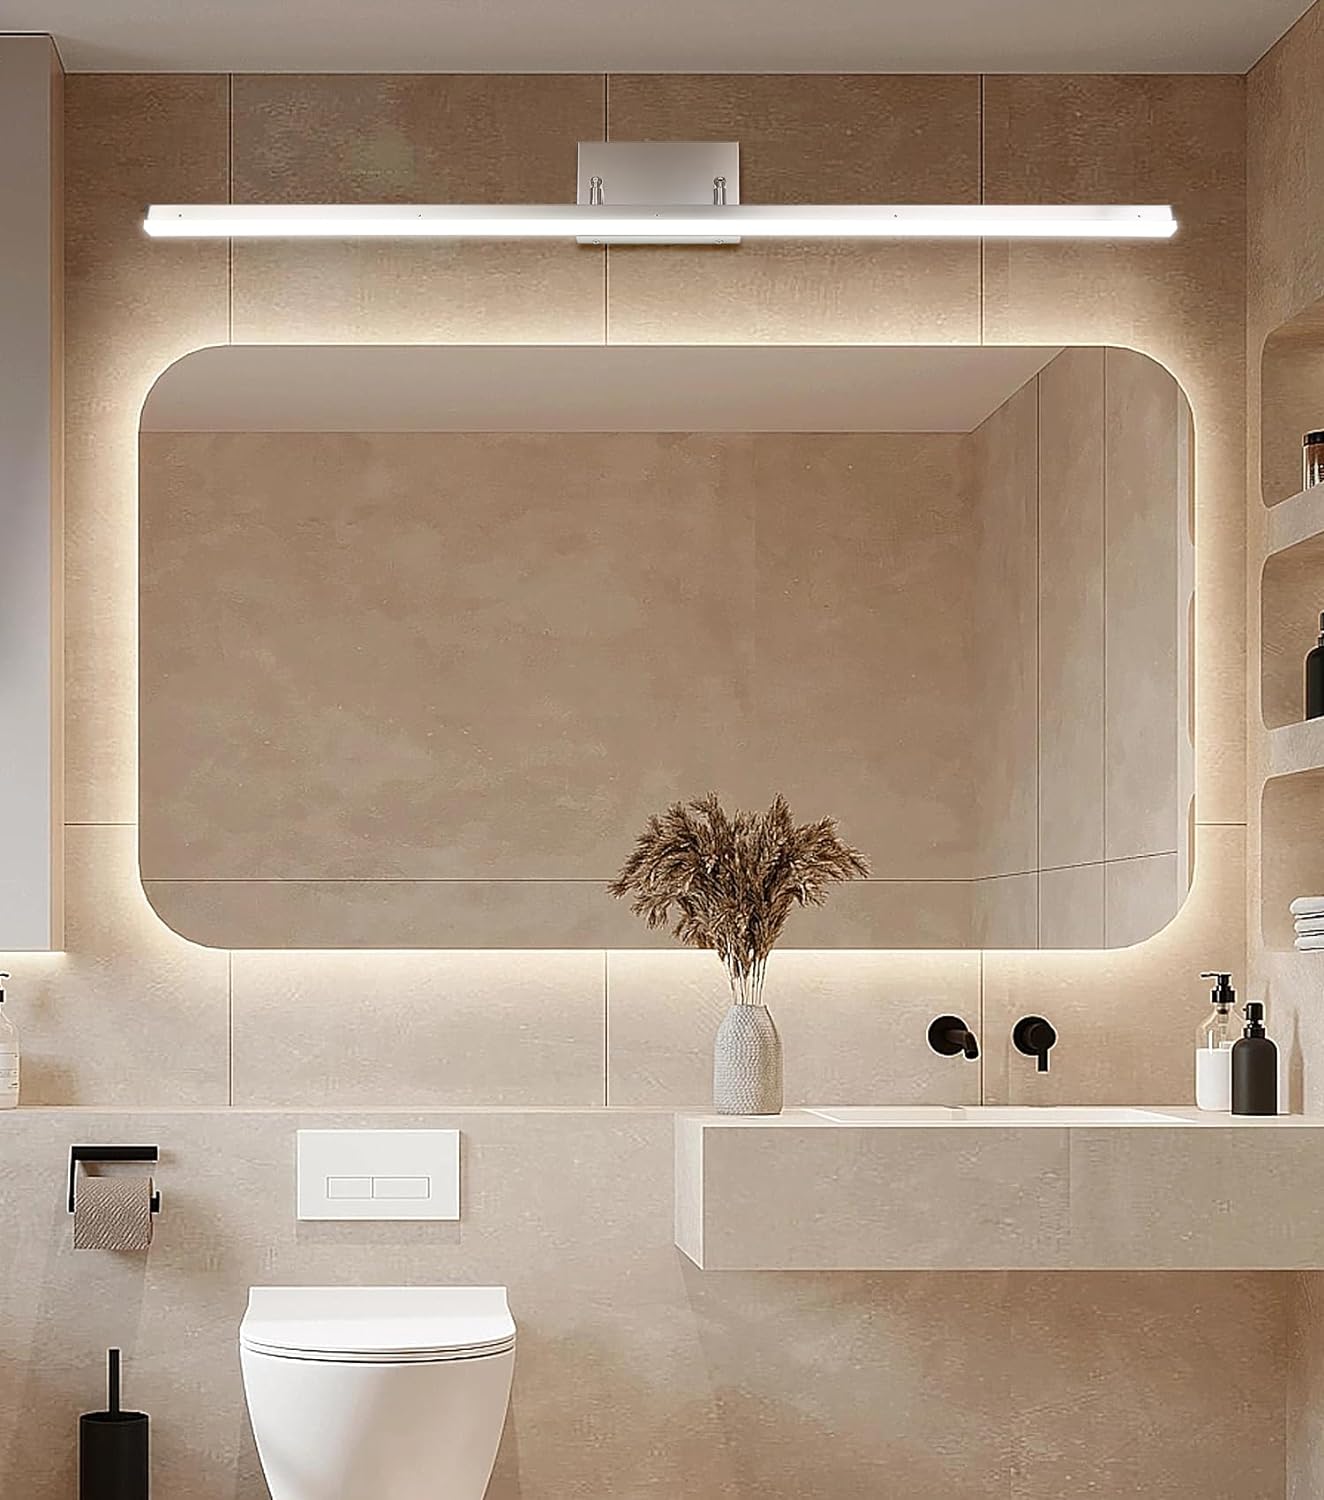 Uniquely Designed Bathroom Lighting Fixtures Illuminate Your Space